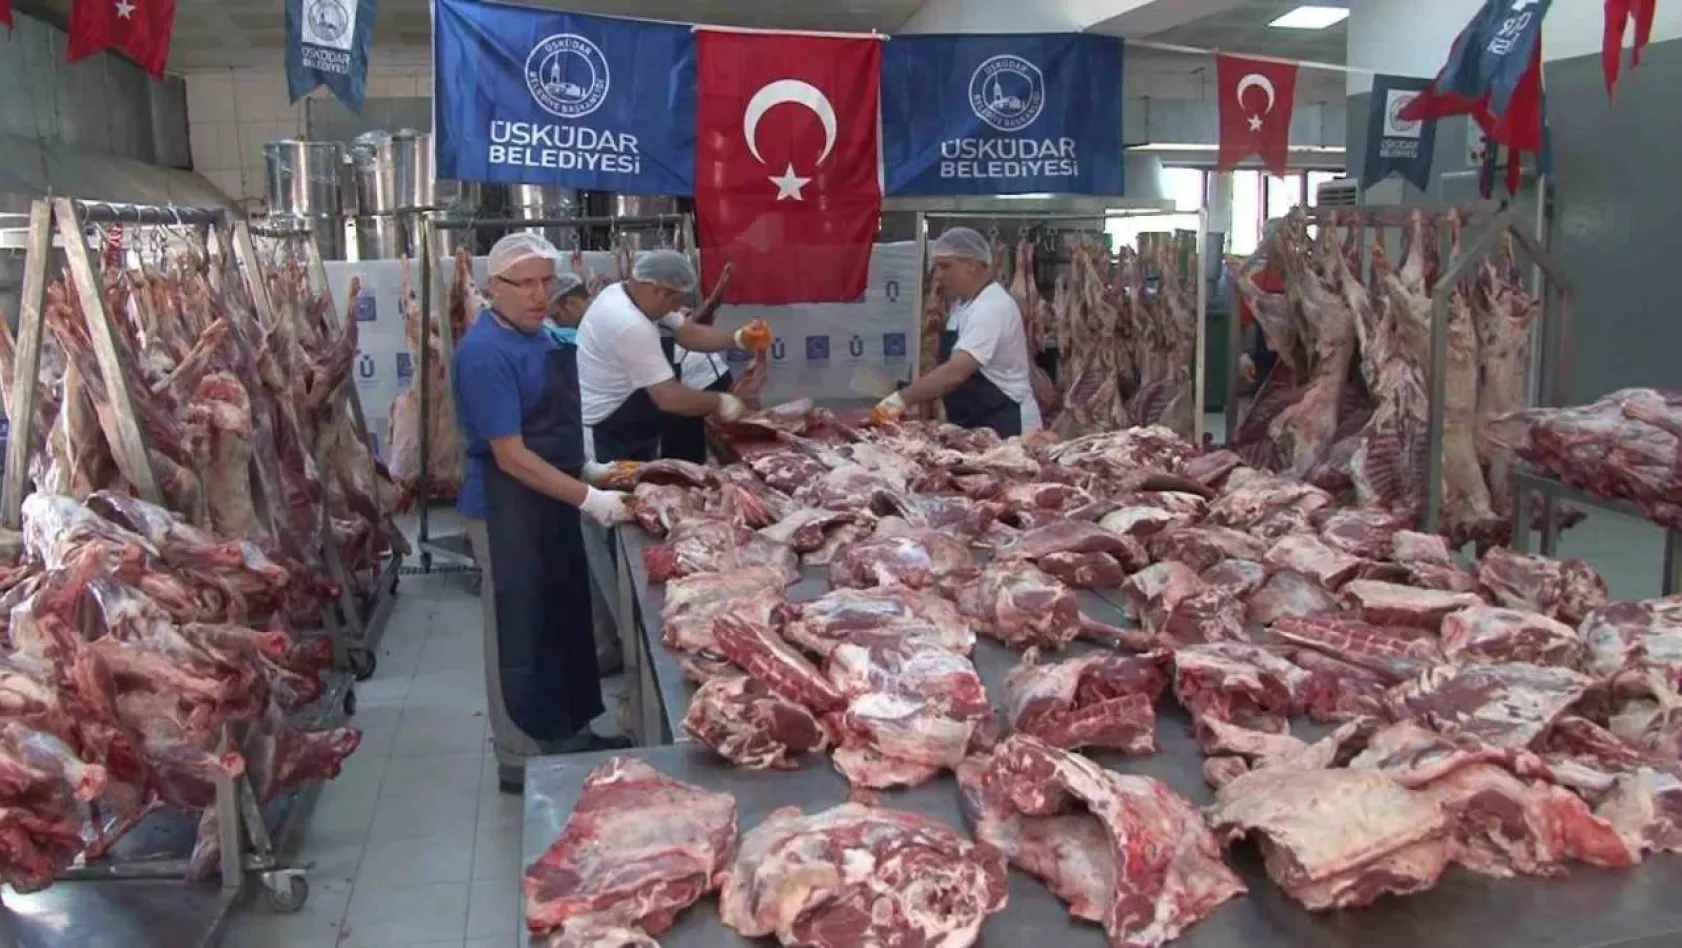 Üsküdar'da 10 bin aileye kurban eti dağıtımı başladı